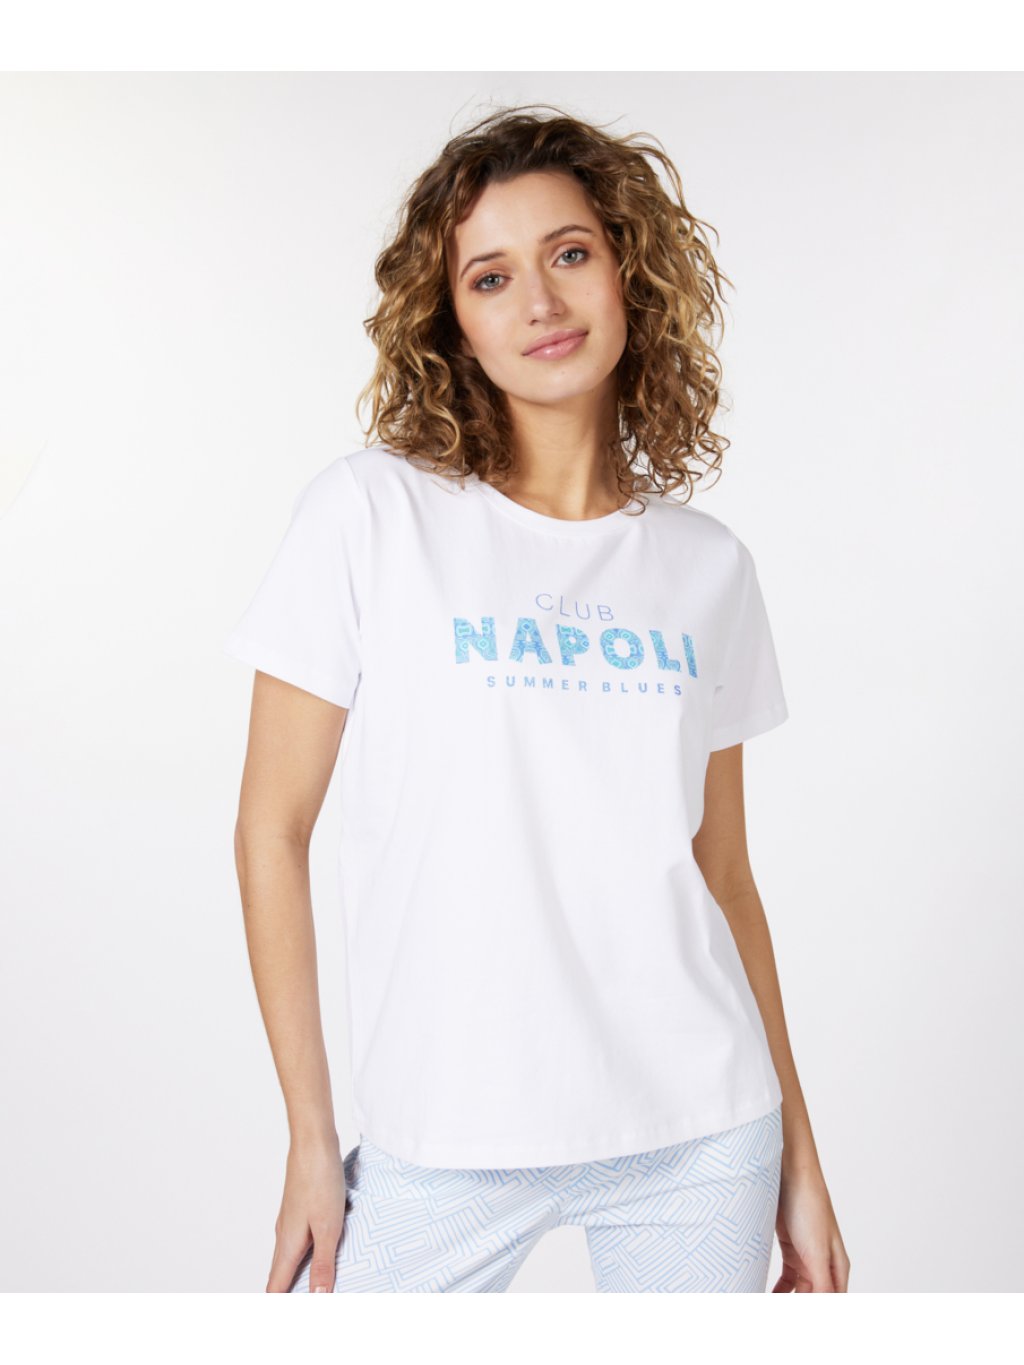 Tričko Esqualo 5209 bílé s nápisem NAPOLI